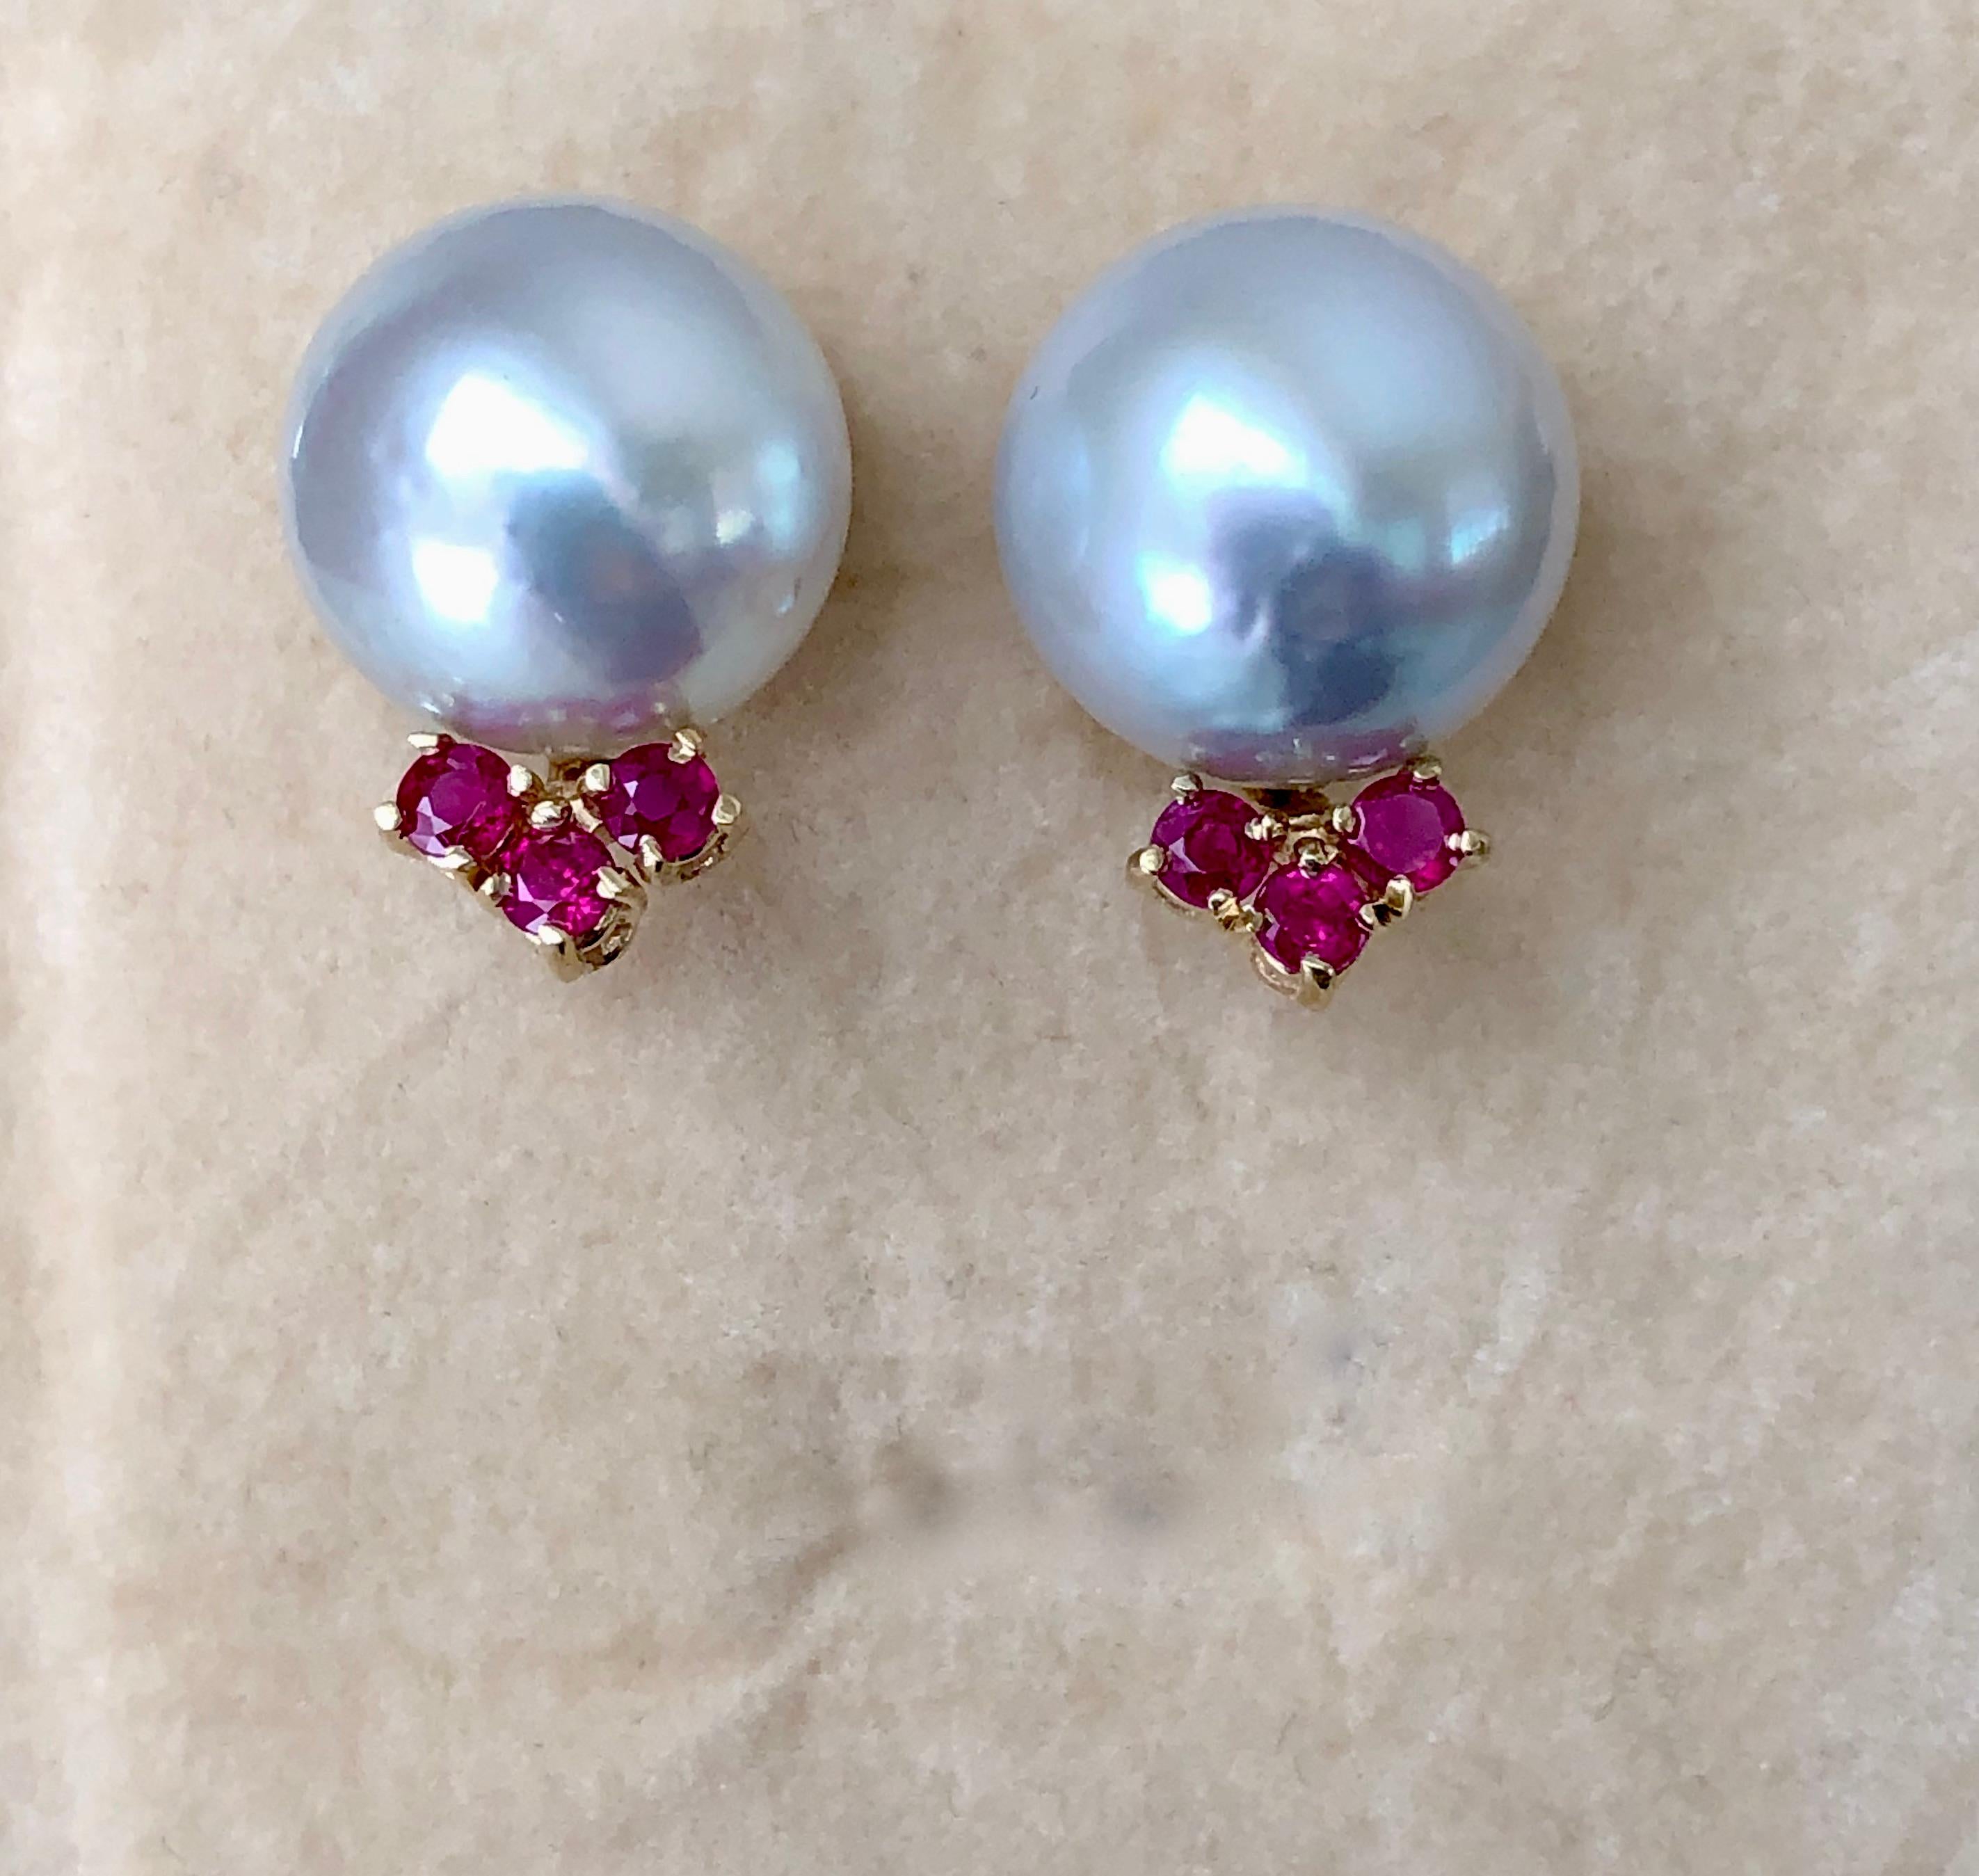 Australian Pearl Earrings with Ruby 14 Karat Yellow Gold 2